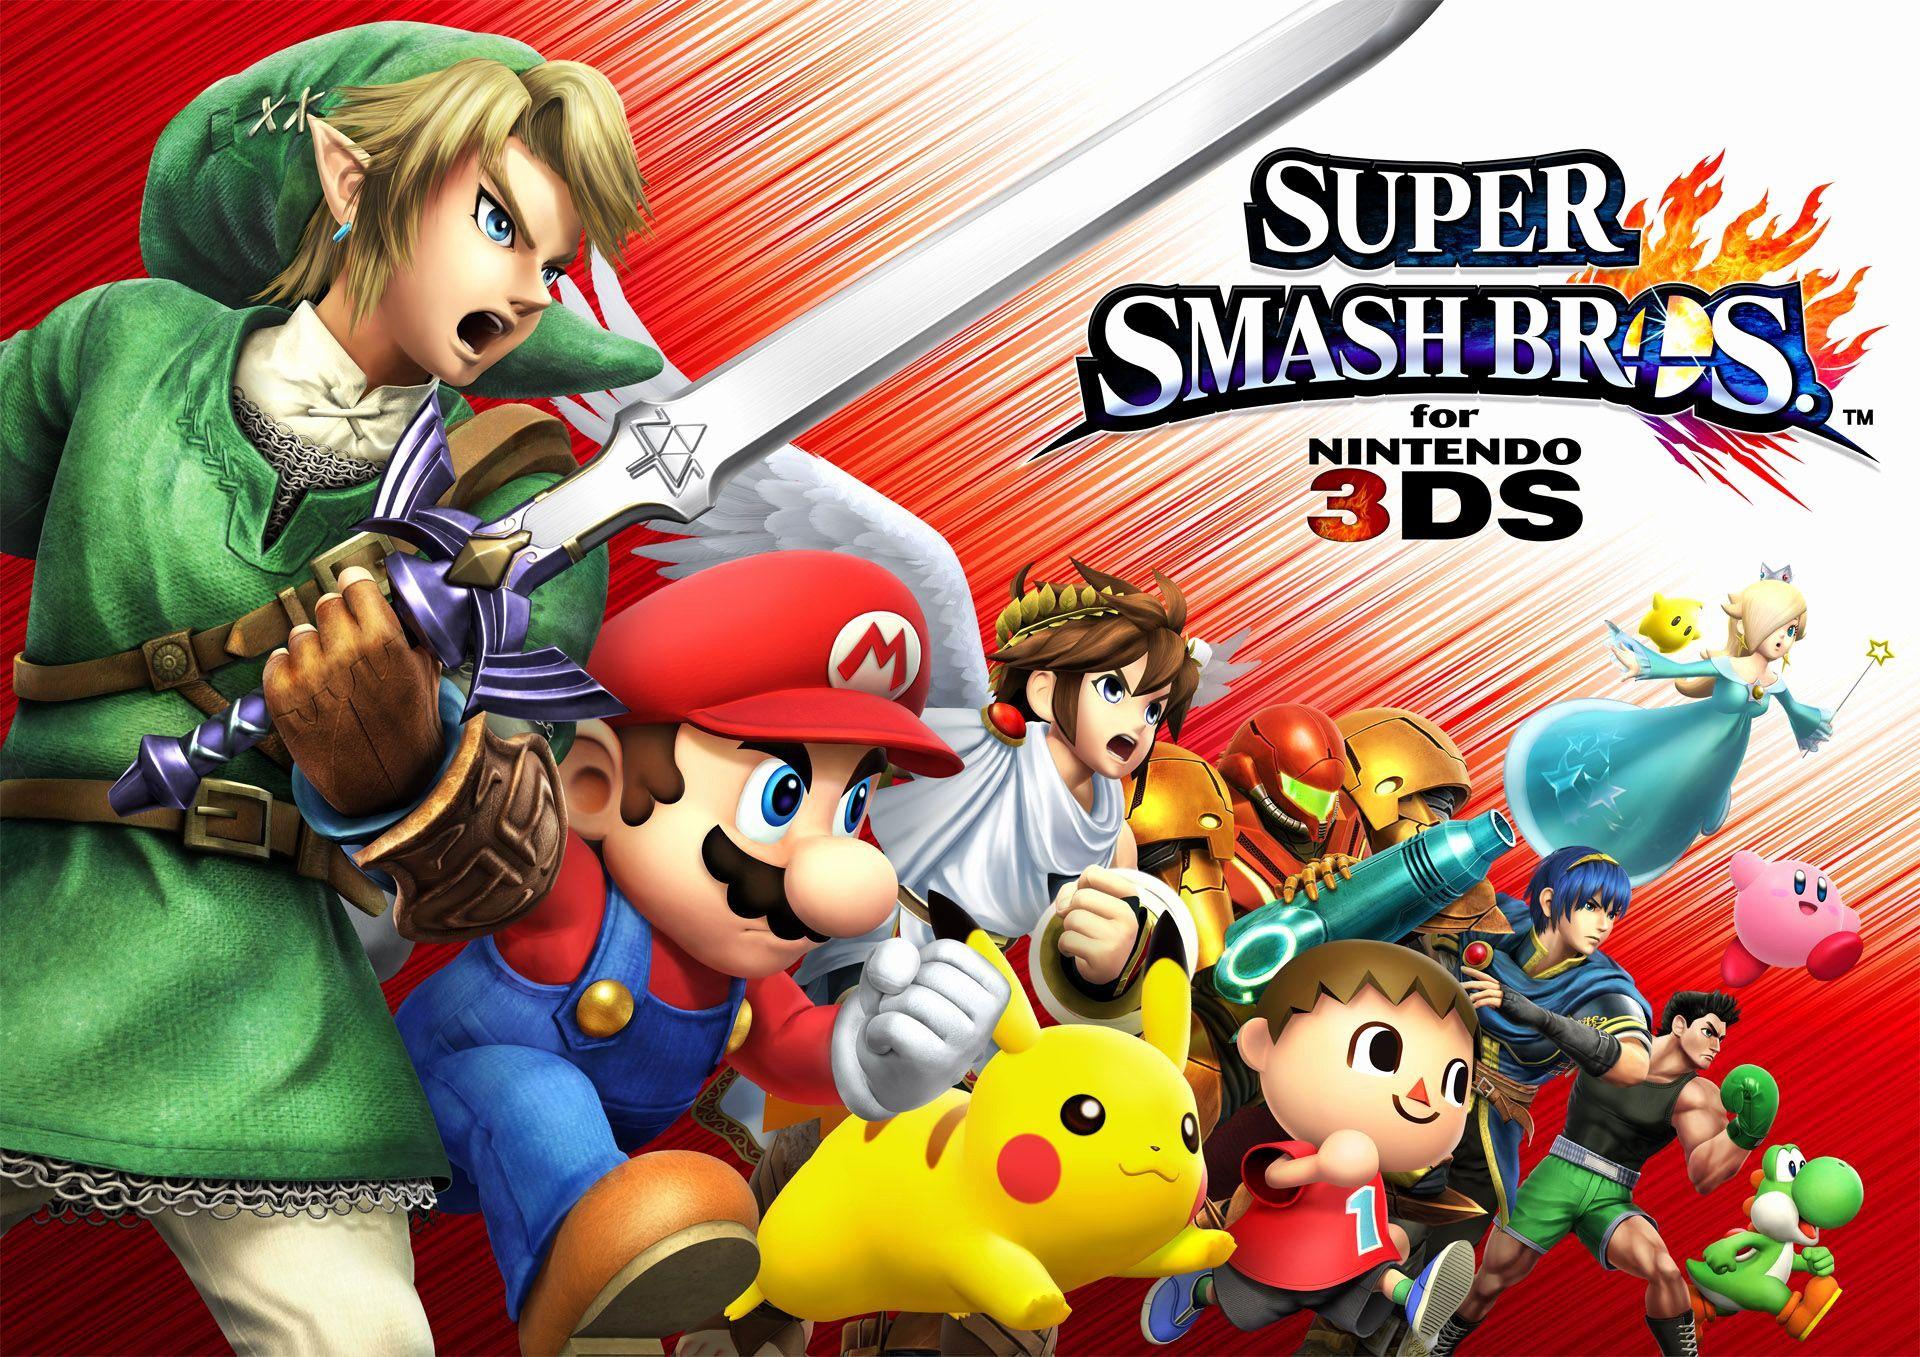 Smash Bros Wallpaper New Super Smash Bros for Nintendo 3Ds Guide